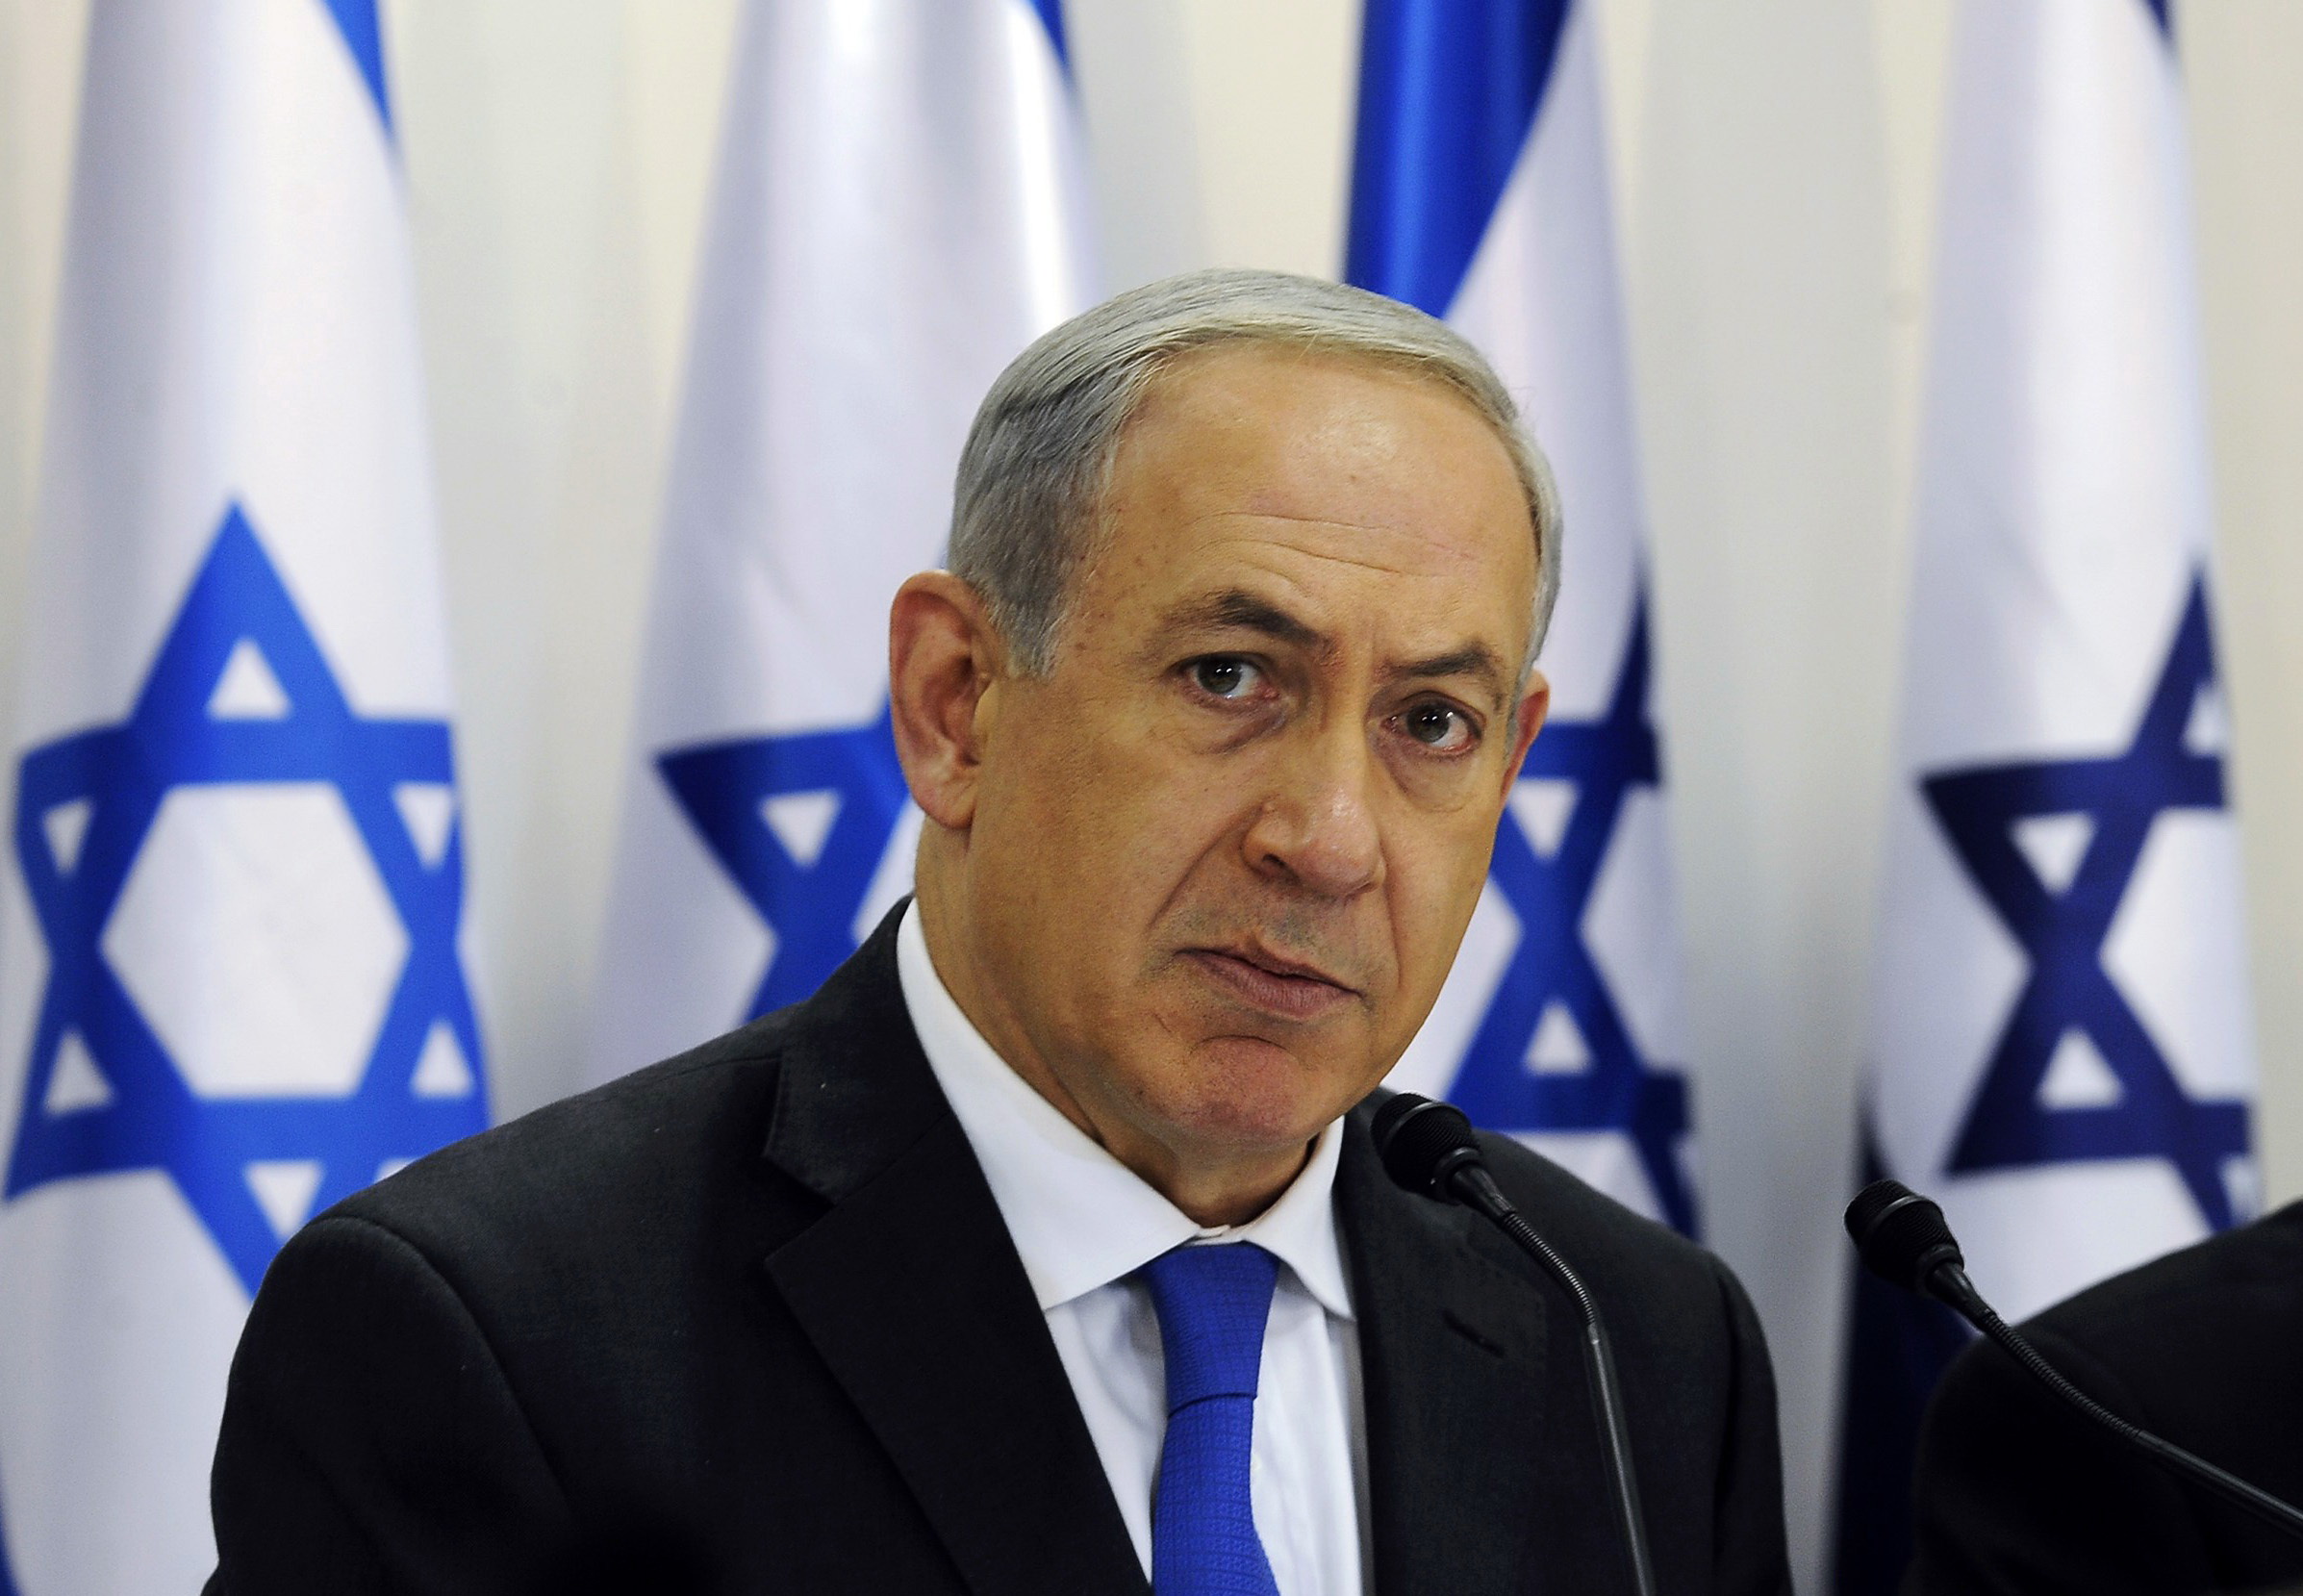 صورة نتانياهو يشكي من حروب في الشرق الاوسط وتاكيدات بان اسرائيل هي المدبر